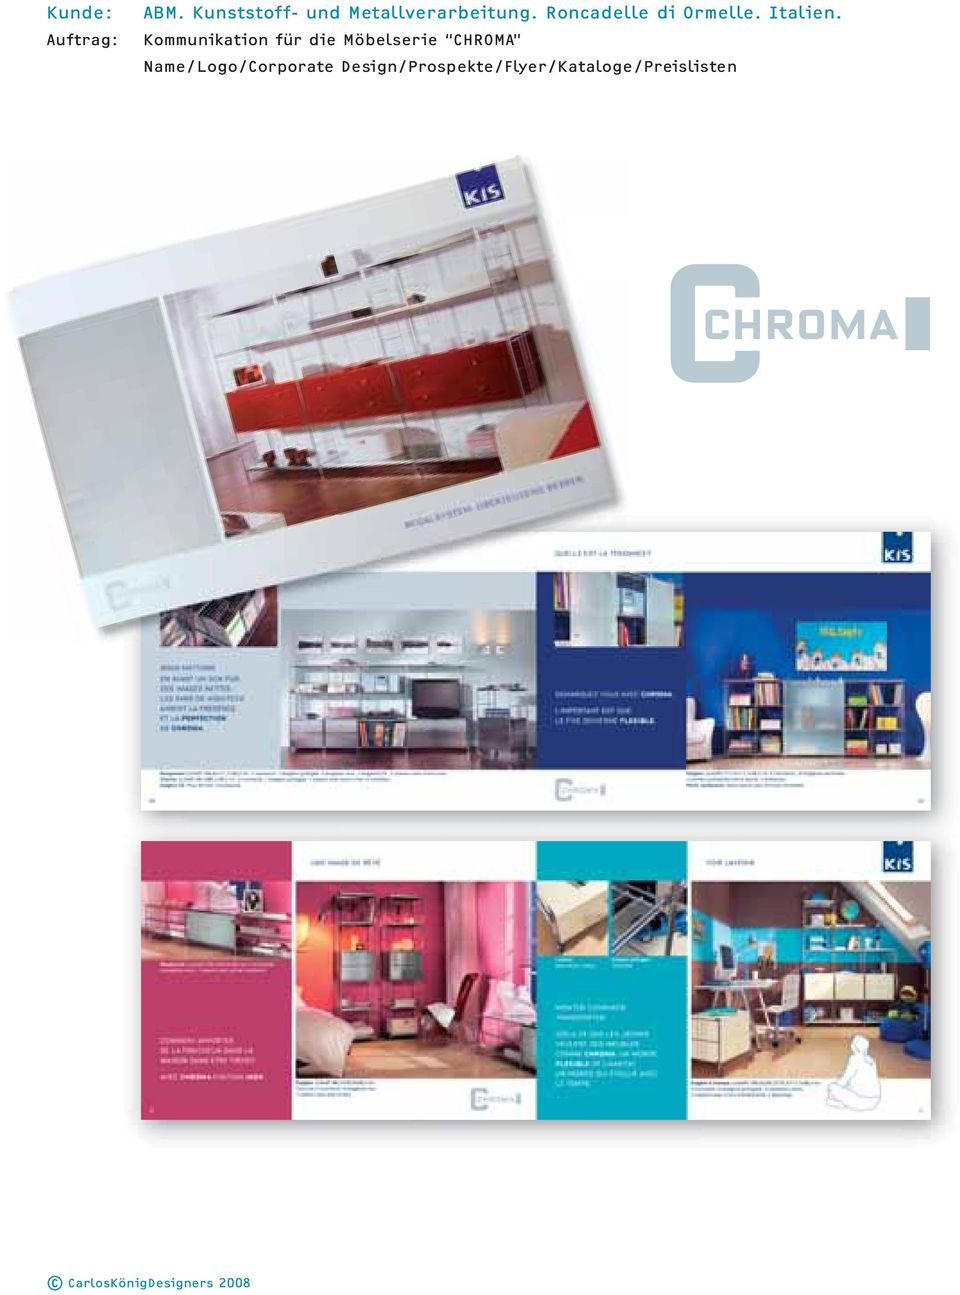 Kommunikation für die Möbelserie CHROMA